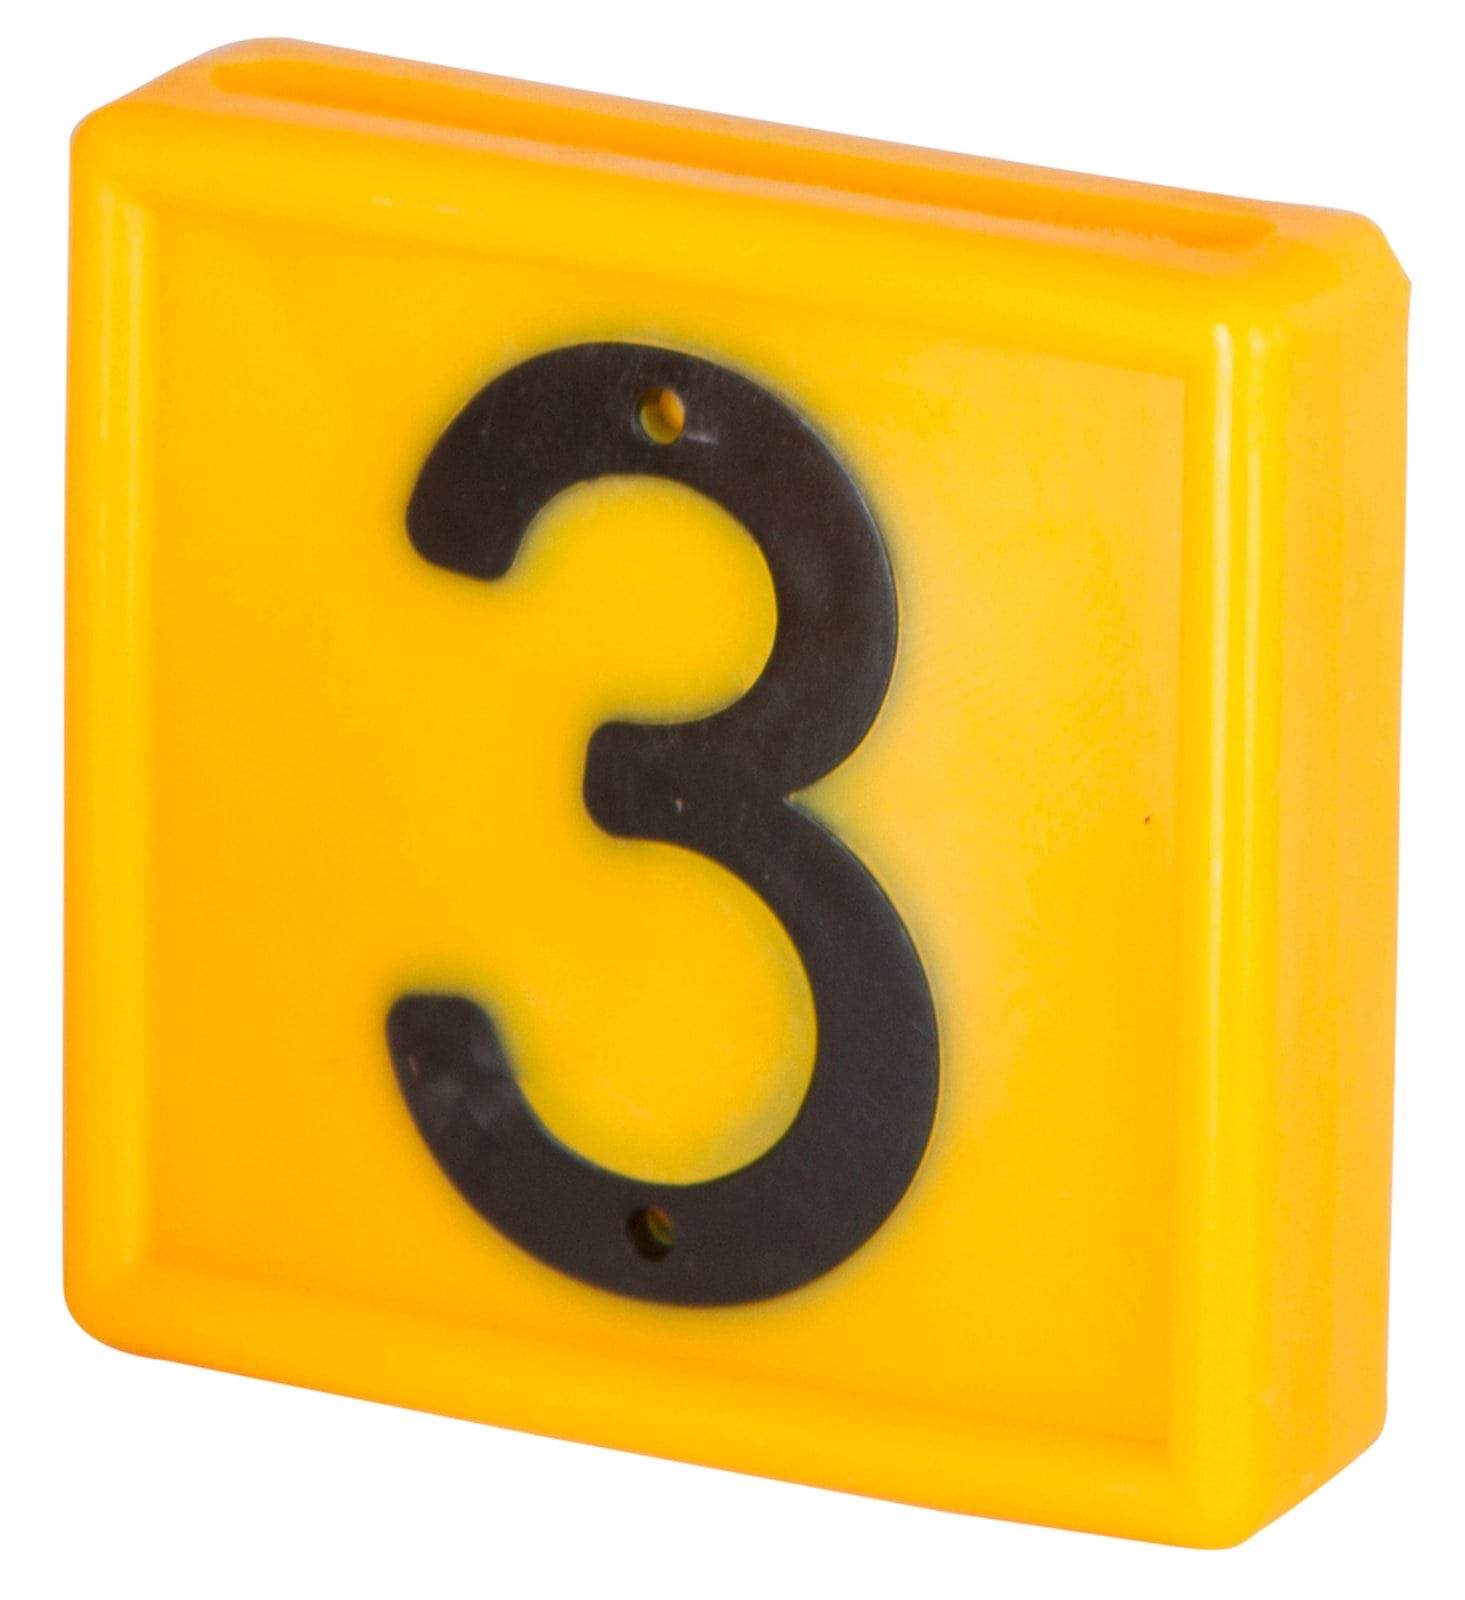 Numer jednostronny do znakowania bydła do obroży, żółty nr ” 3 “